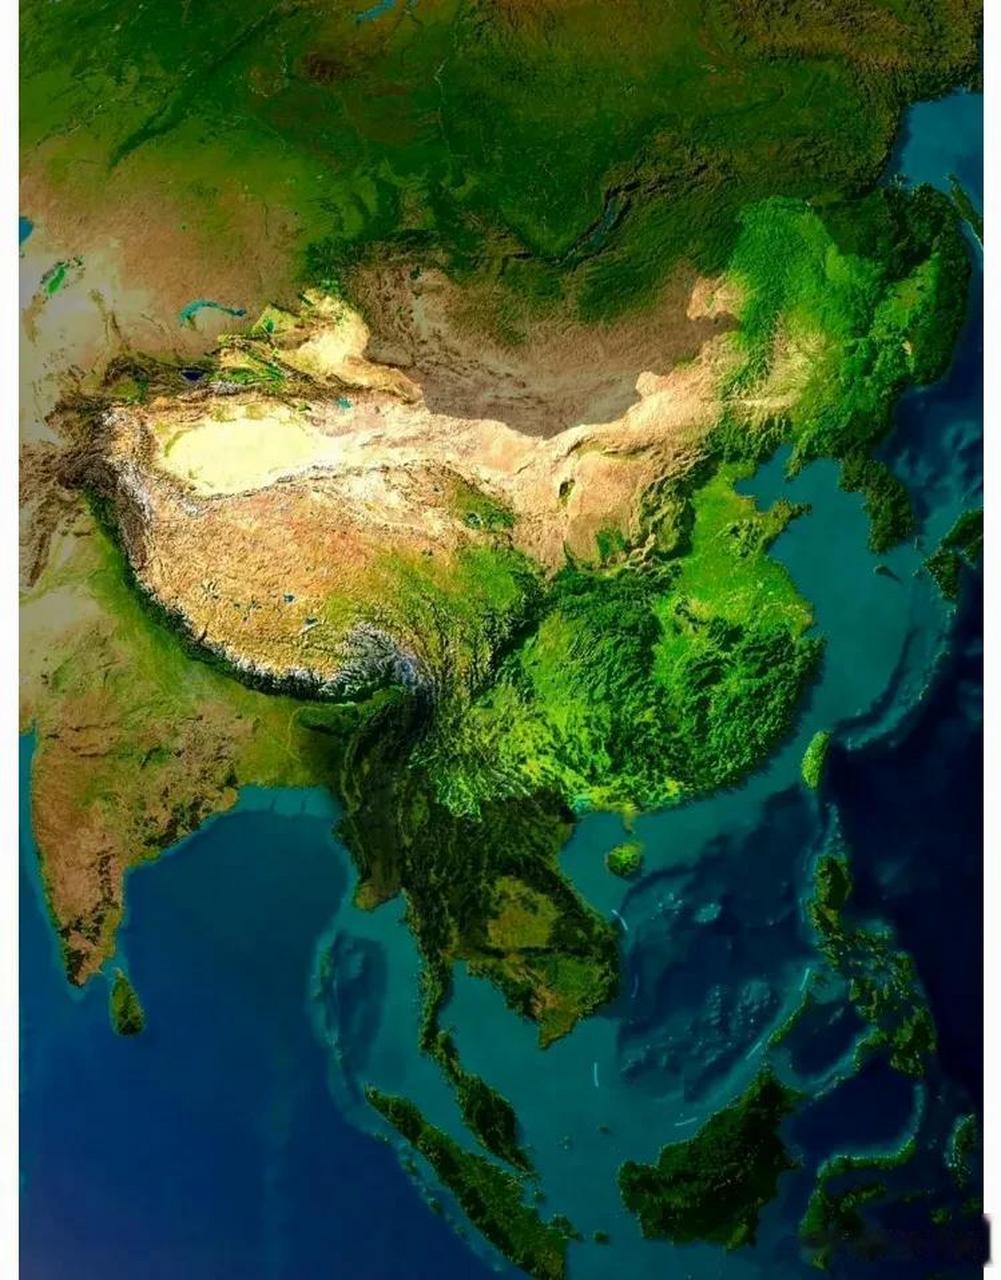 亚洲地形模型图图片